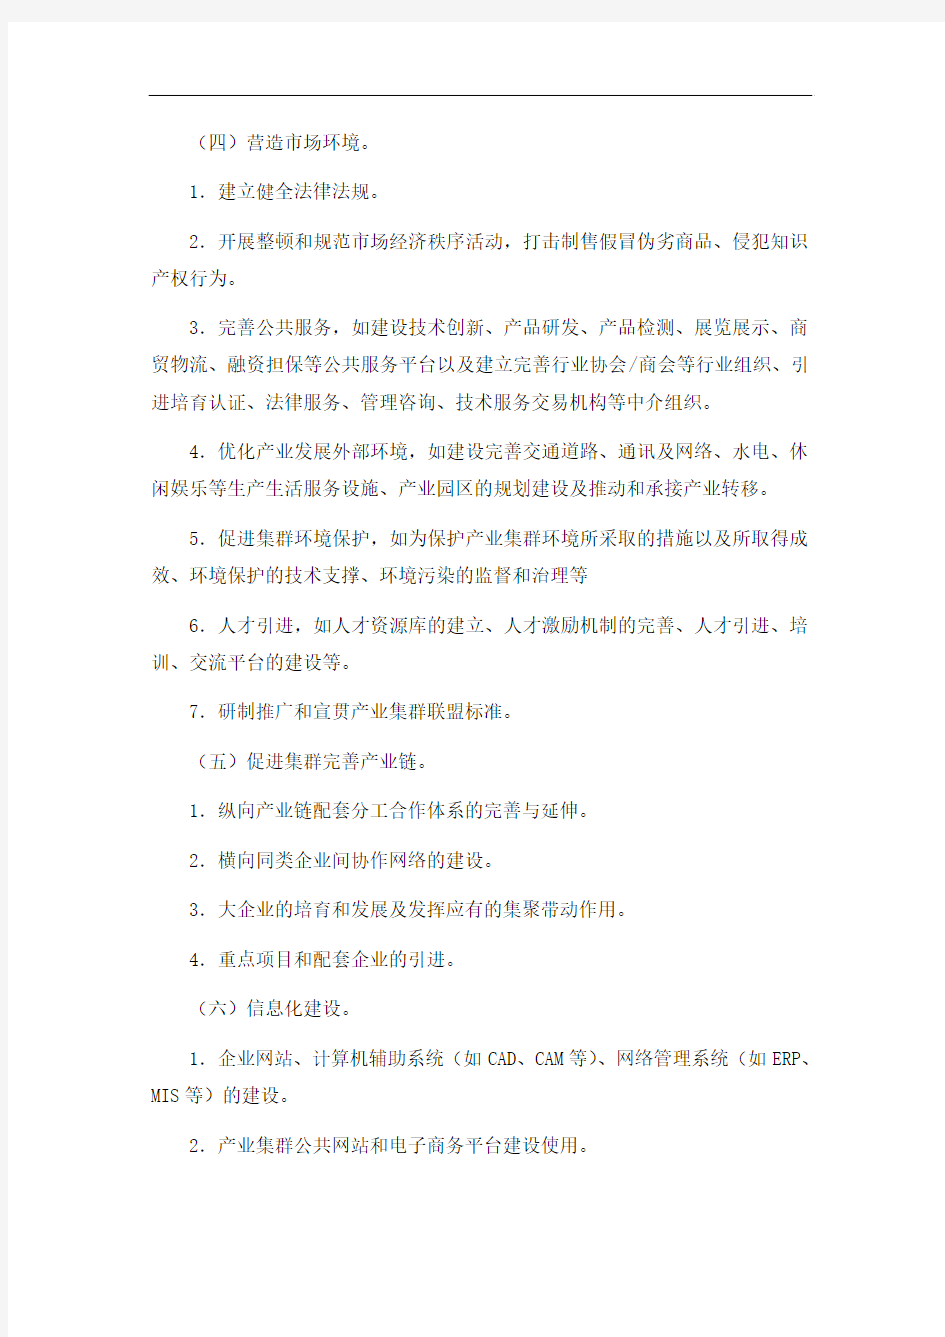 广东省产业集群升级示范区申报表格式